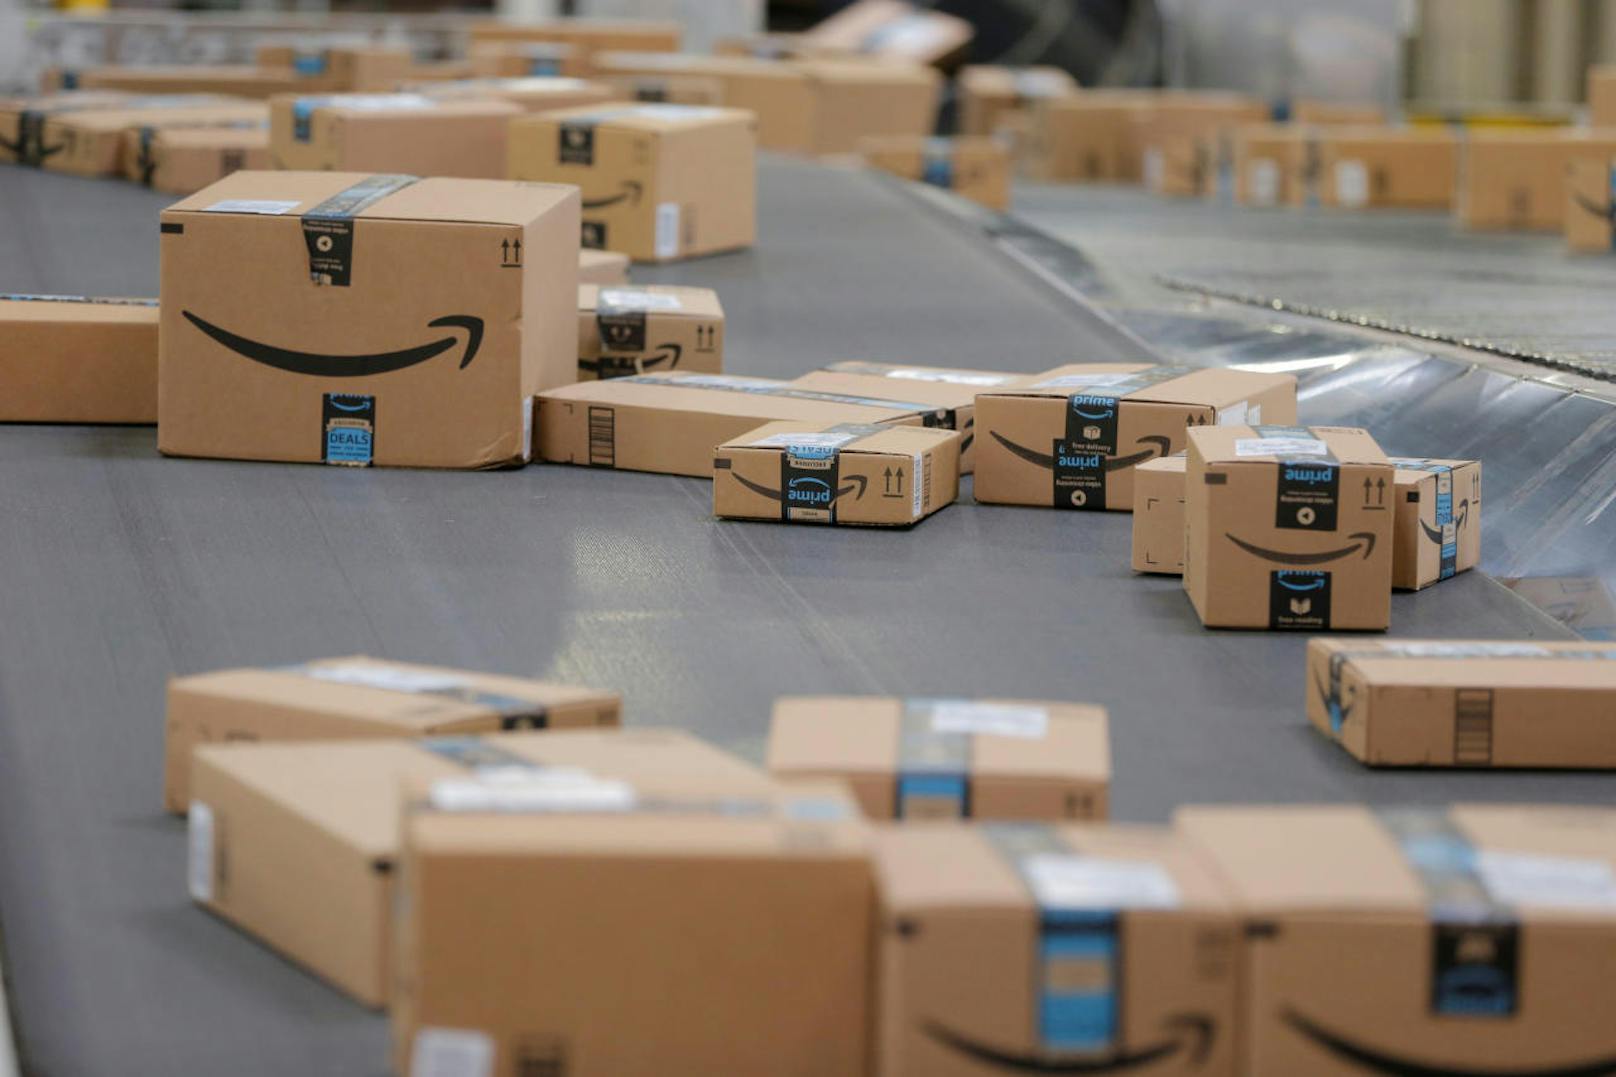 Amazon bestreitet die Vorwürfe nicht, betont aber, dass die Verbesserung von Prozessen hohen Stellenwert für das Unternehmen habe.